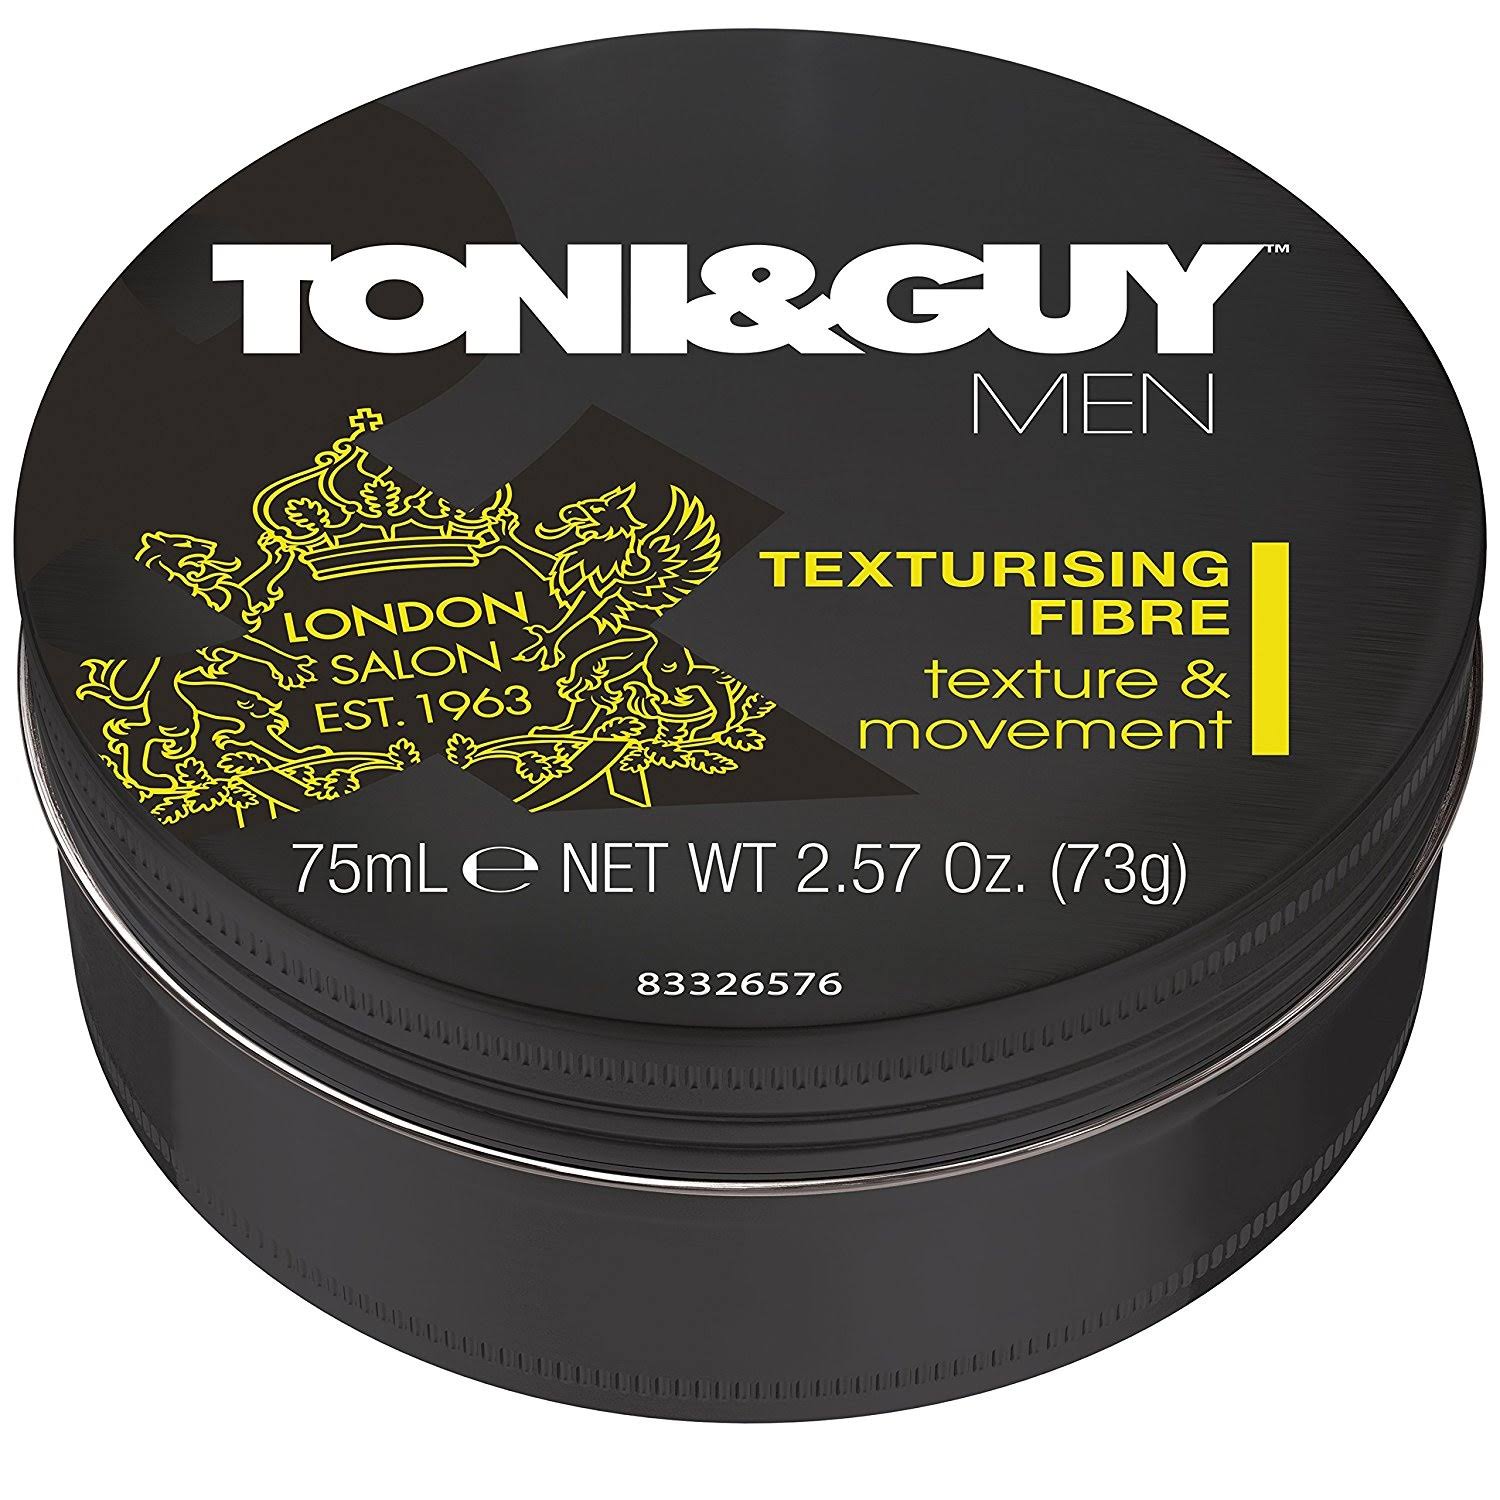 Toni & Guy Men Texturising Fibre - 75ml